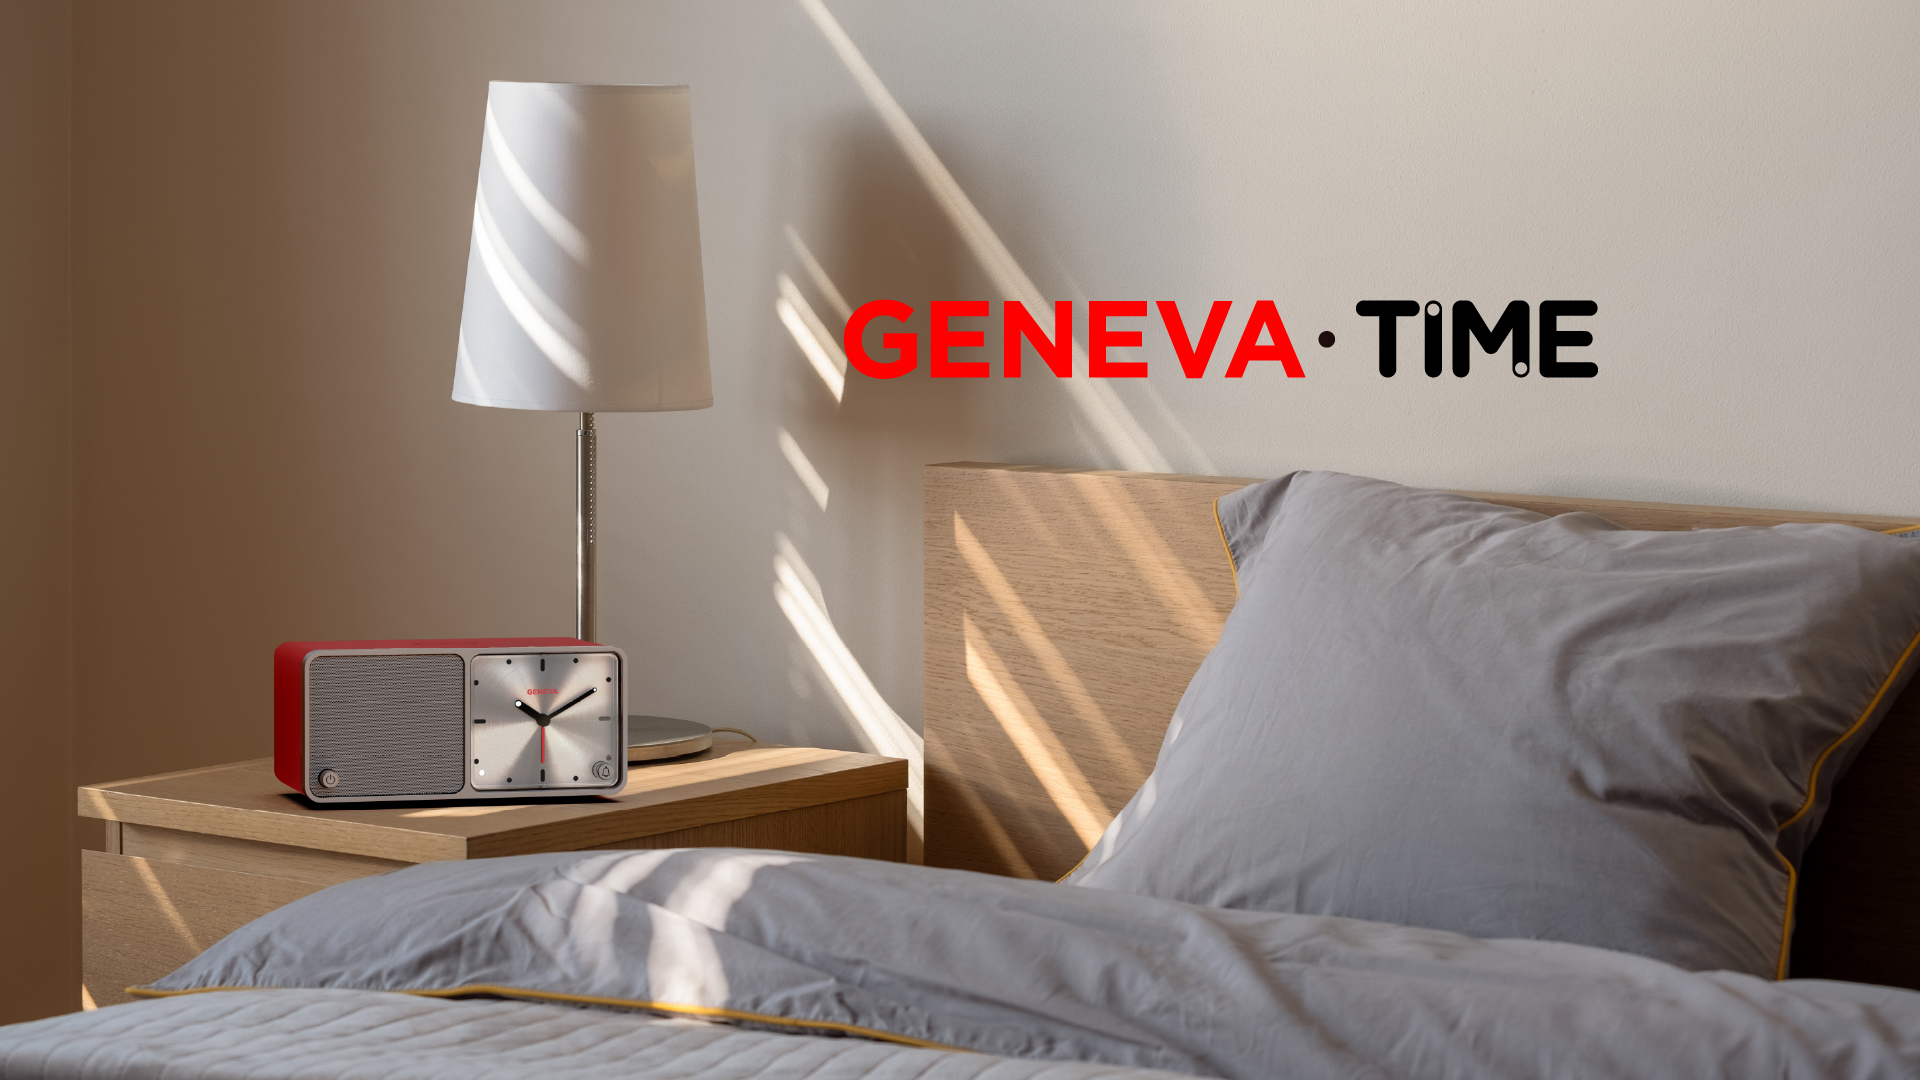 Geneva Time Red